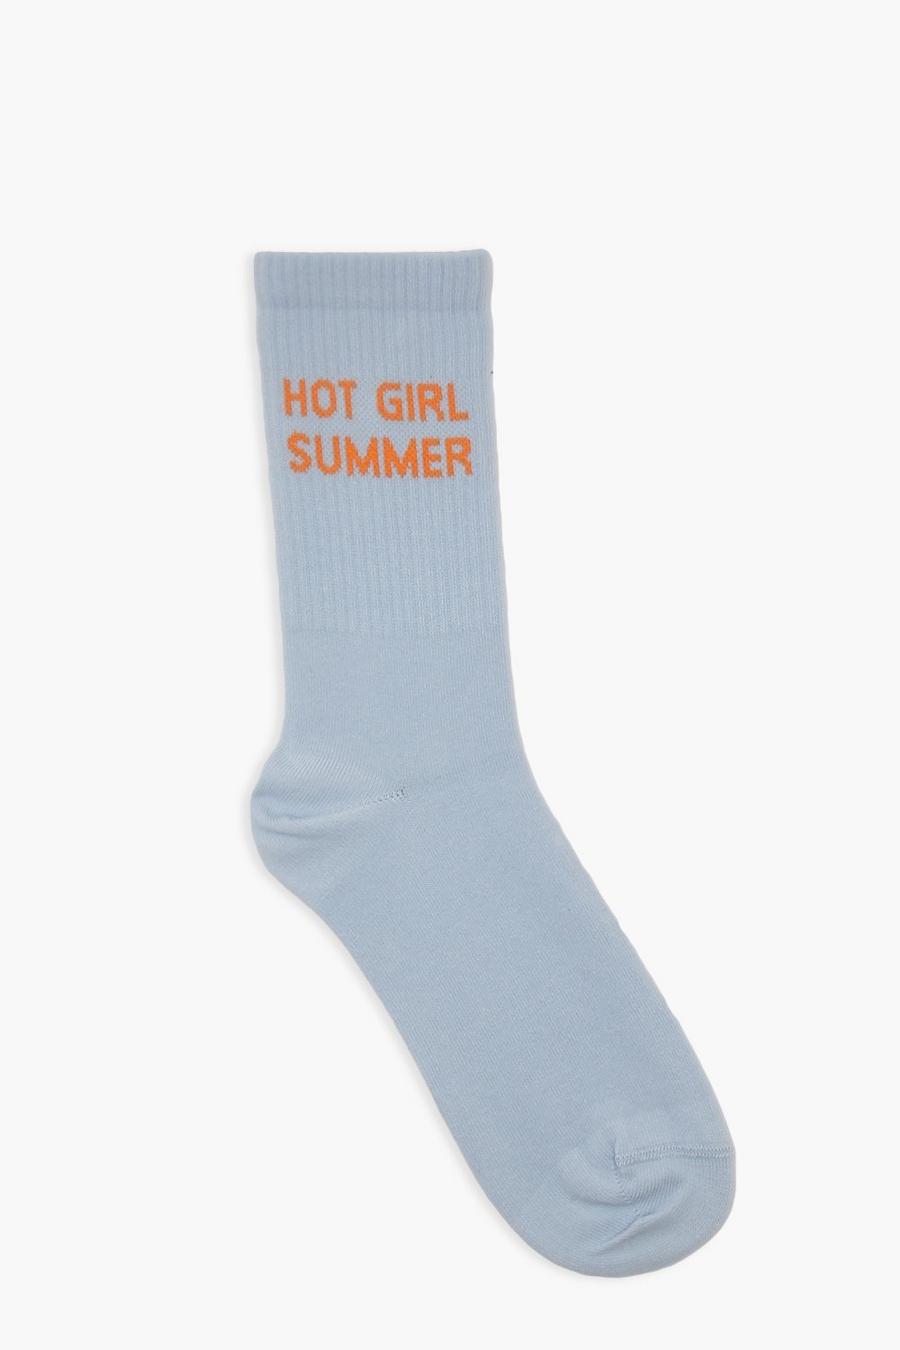 Socken mit Hot Girl Summer Slogan, Blue